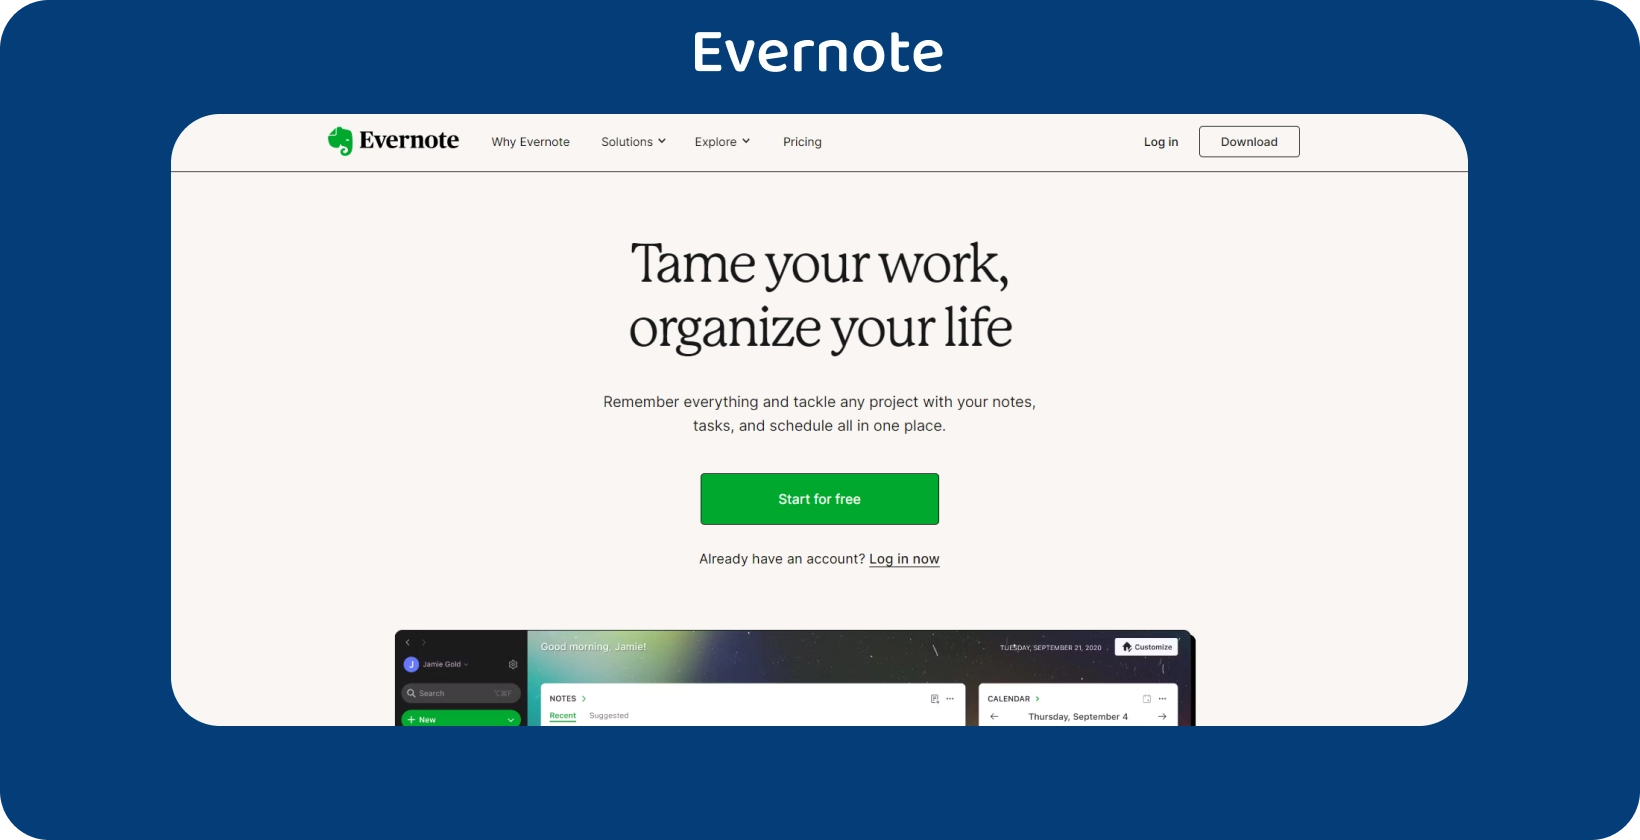 La schermata per prendere appunti di Evernote con l'elenco delle cose da fare, semplificando l'organizzazione delle attività.